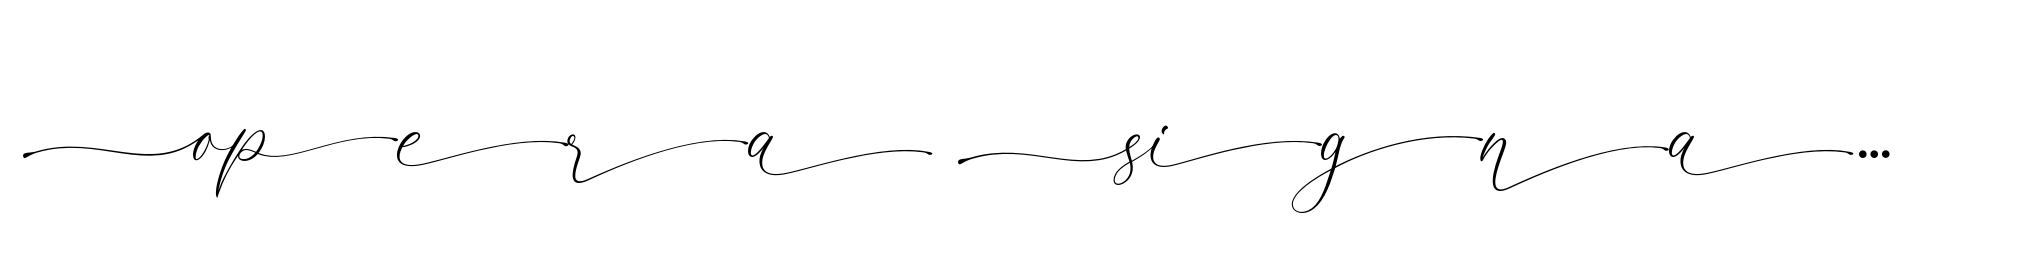 Opera Signature Script Swash image